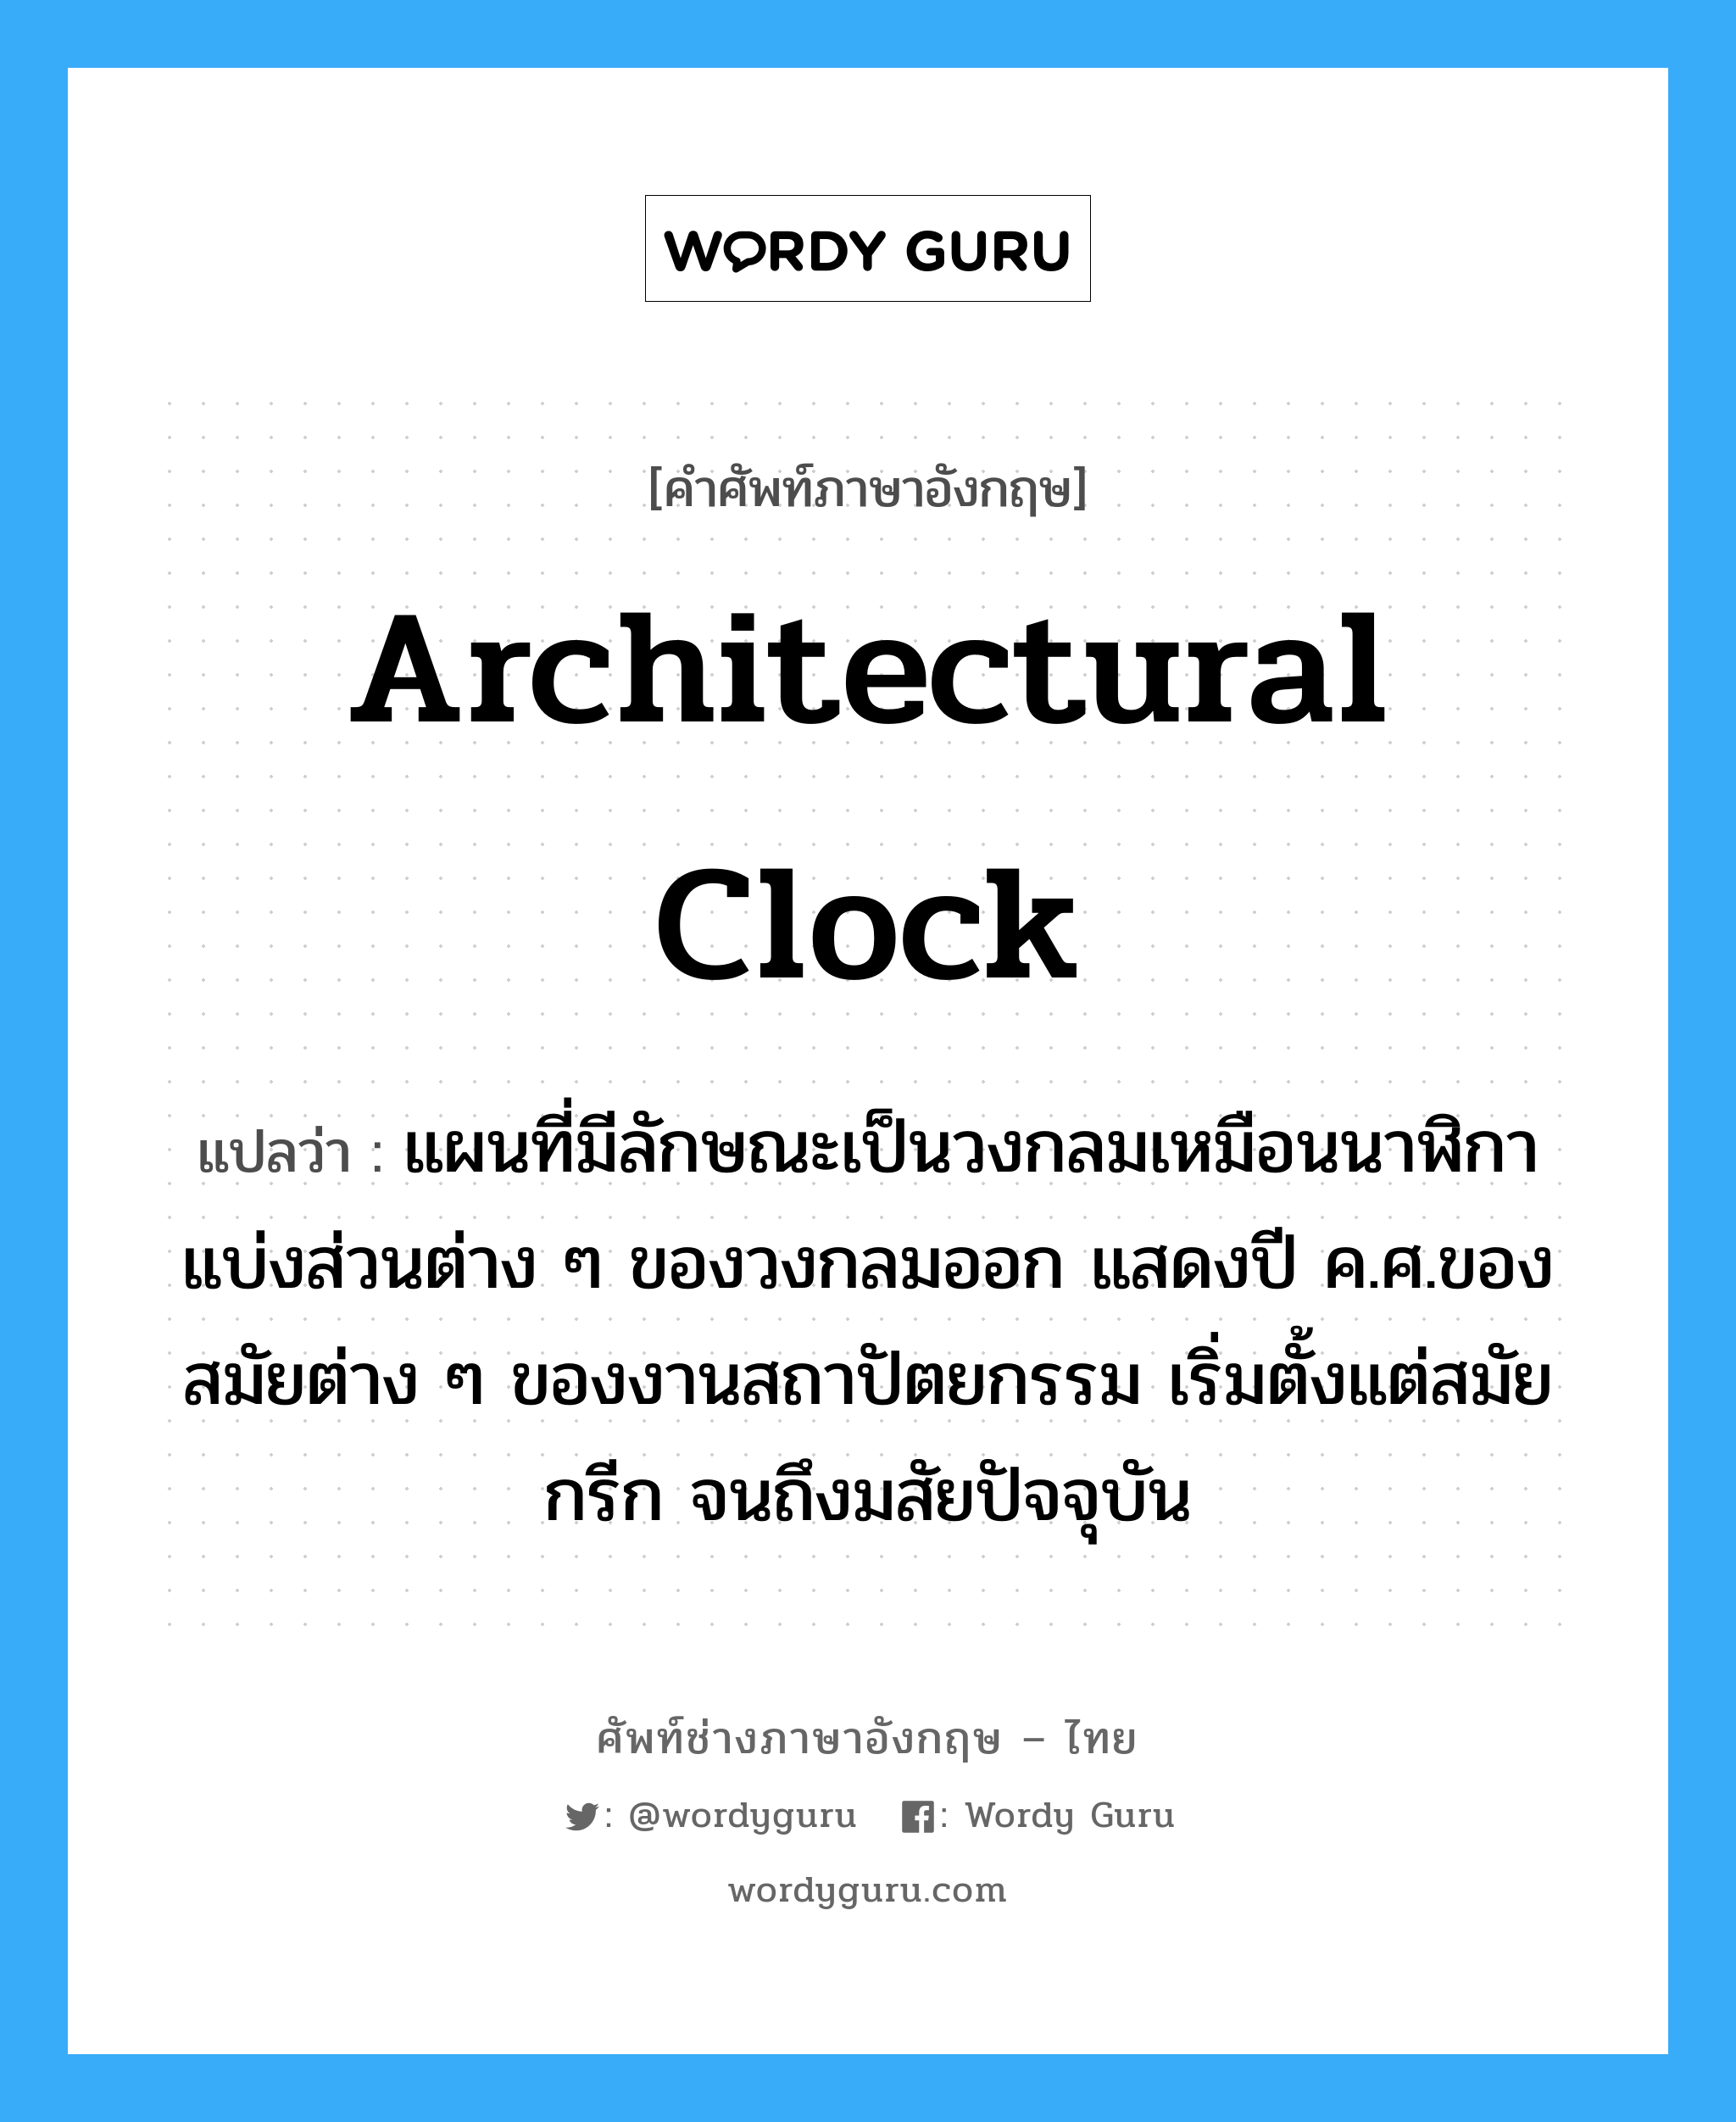 architectural clock แปลว่า?, คำศัพท์ช่างภาษาอังกฤษ - ไทย architectural clock คำศัพท์ภาษาอังกฤษ architectural clock แปลว่า แผนที่มีลักษณะเป็นวงกลมเหมือนนาฬิกา แบ่งส่วนต่าง ๆ ของวงกลมออก แสดงปี ค.ศ.ของสมัยต่าง ๆ ของงานสถาปัตยกรรม เริ่มตั้งแต่สมัยกรีก จนถึงมสัยปัจจุบัน